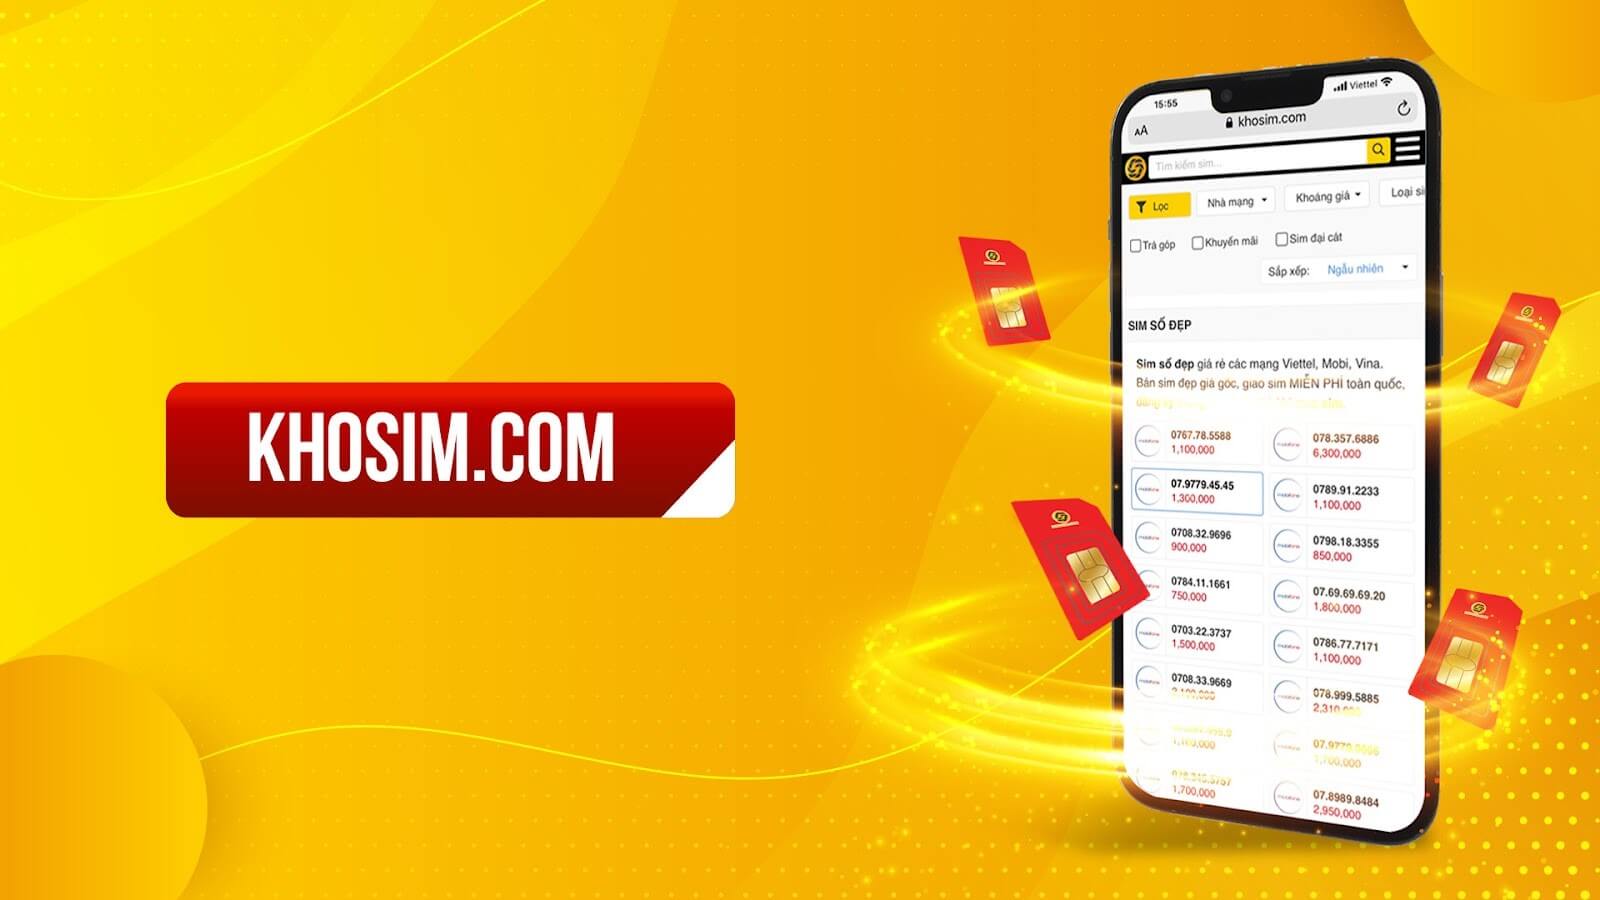 Thương hiệu Khosim.com được khách hàng đón nhận